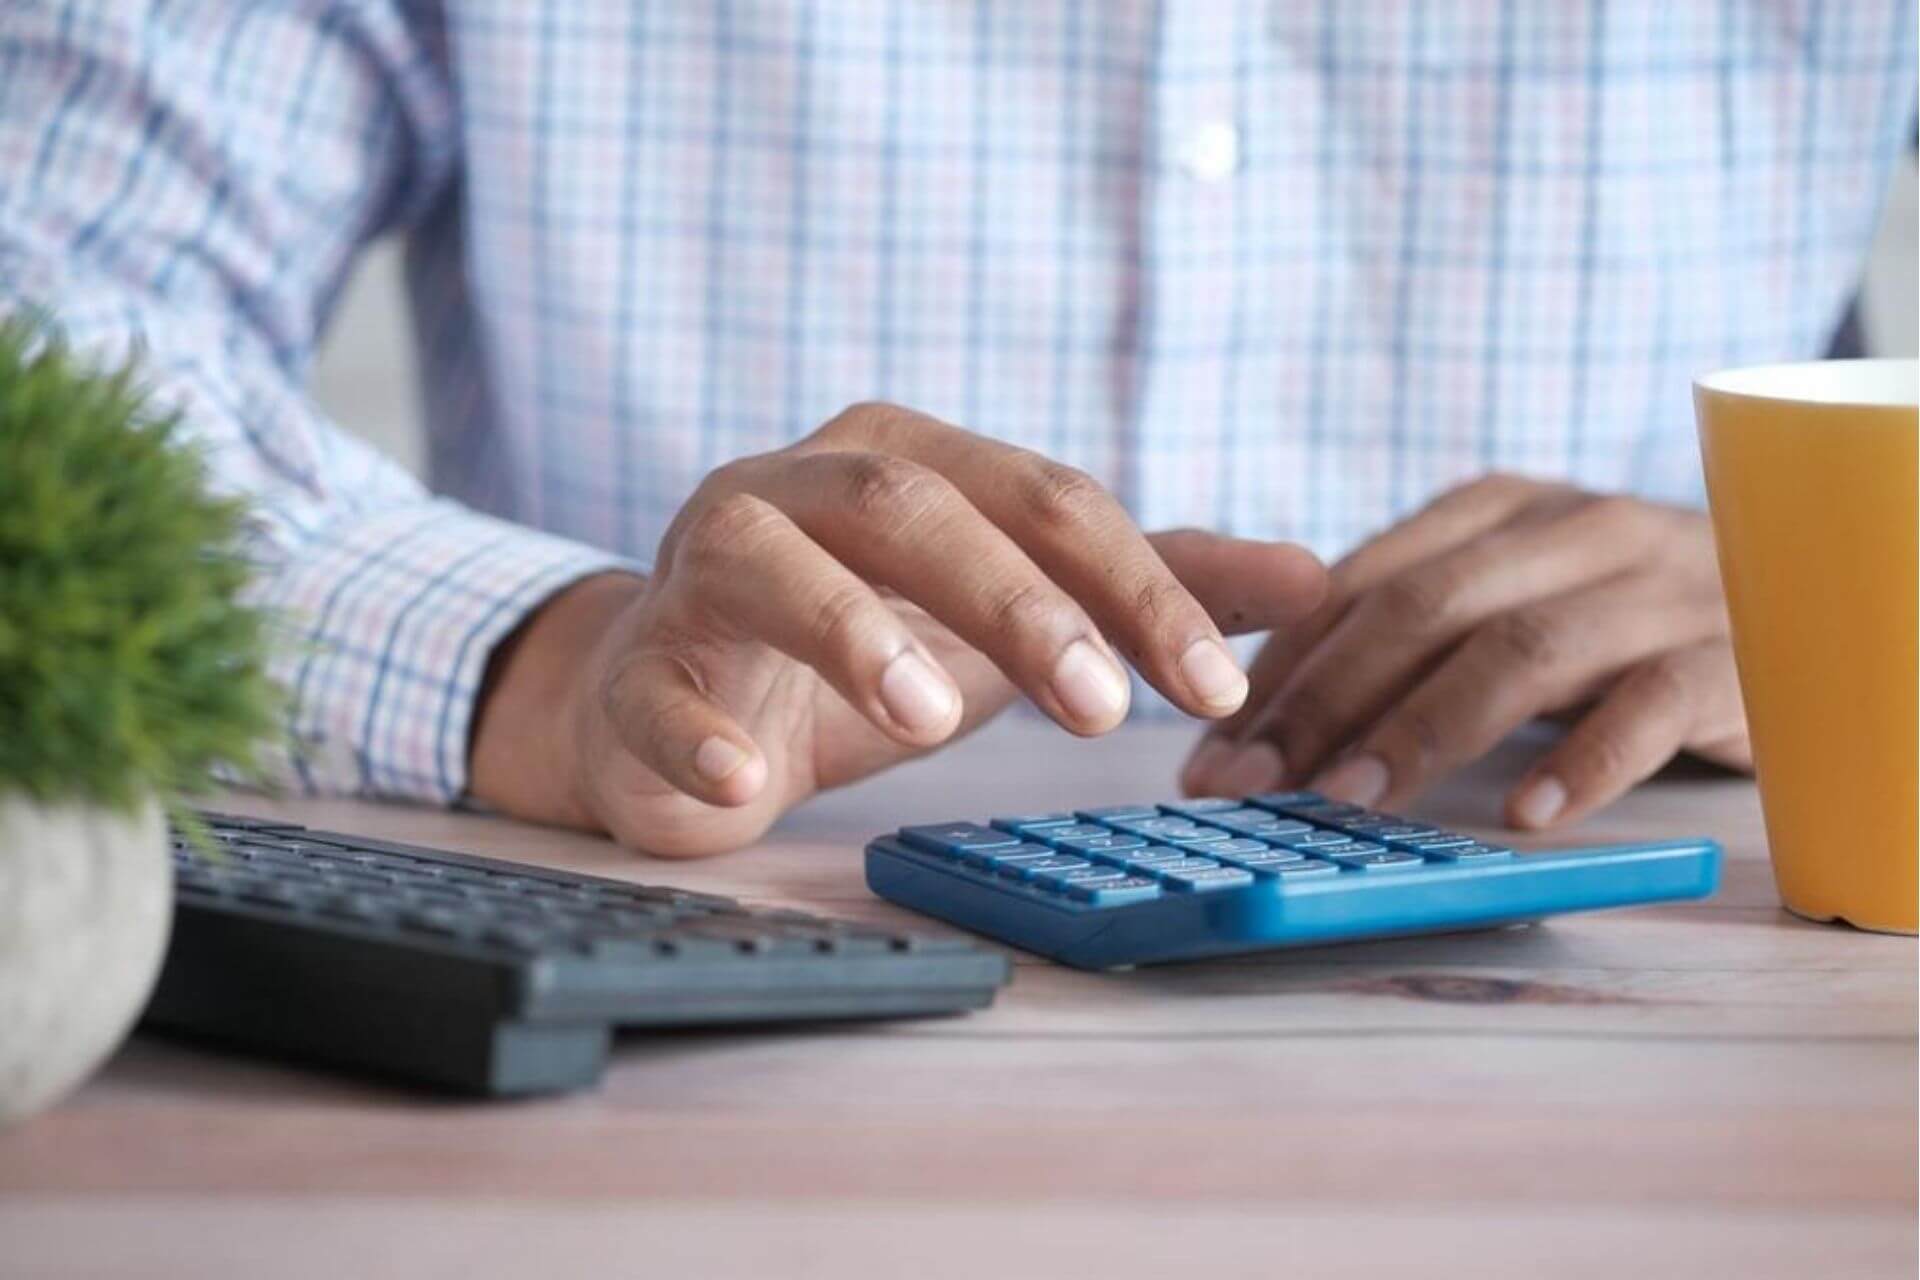 Homem calculando estorno de venda em uma calculadora.